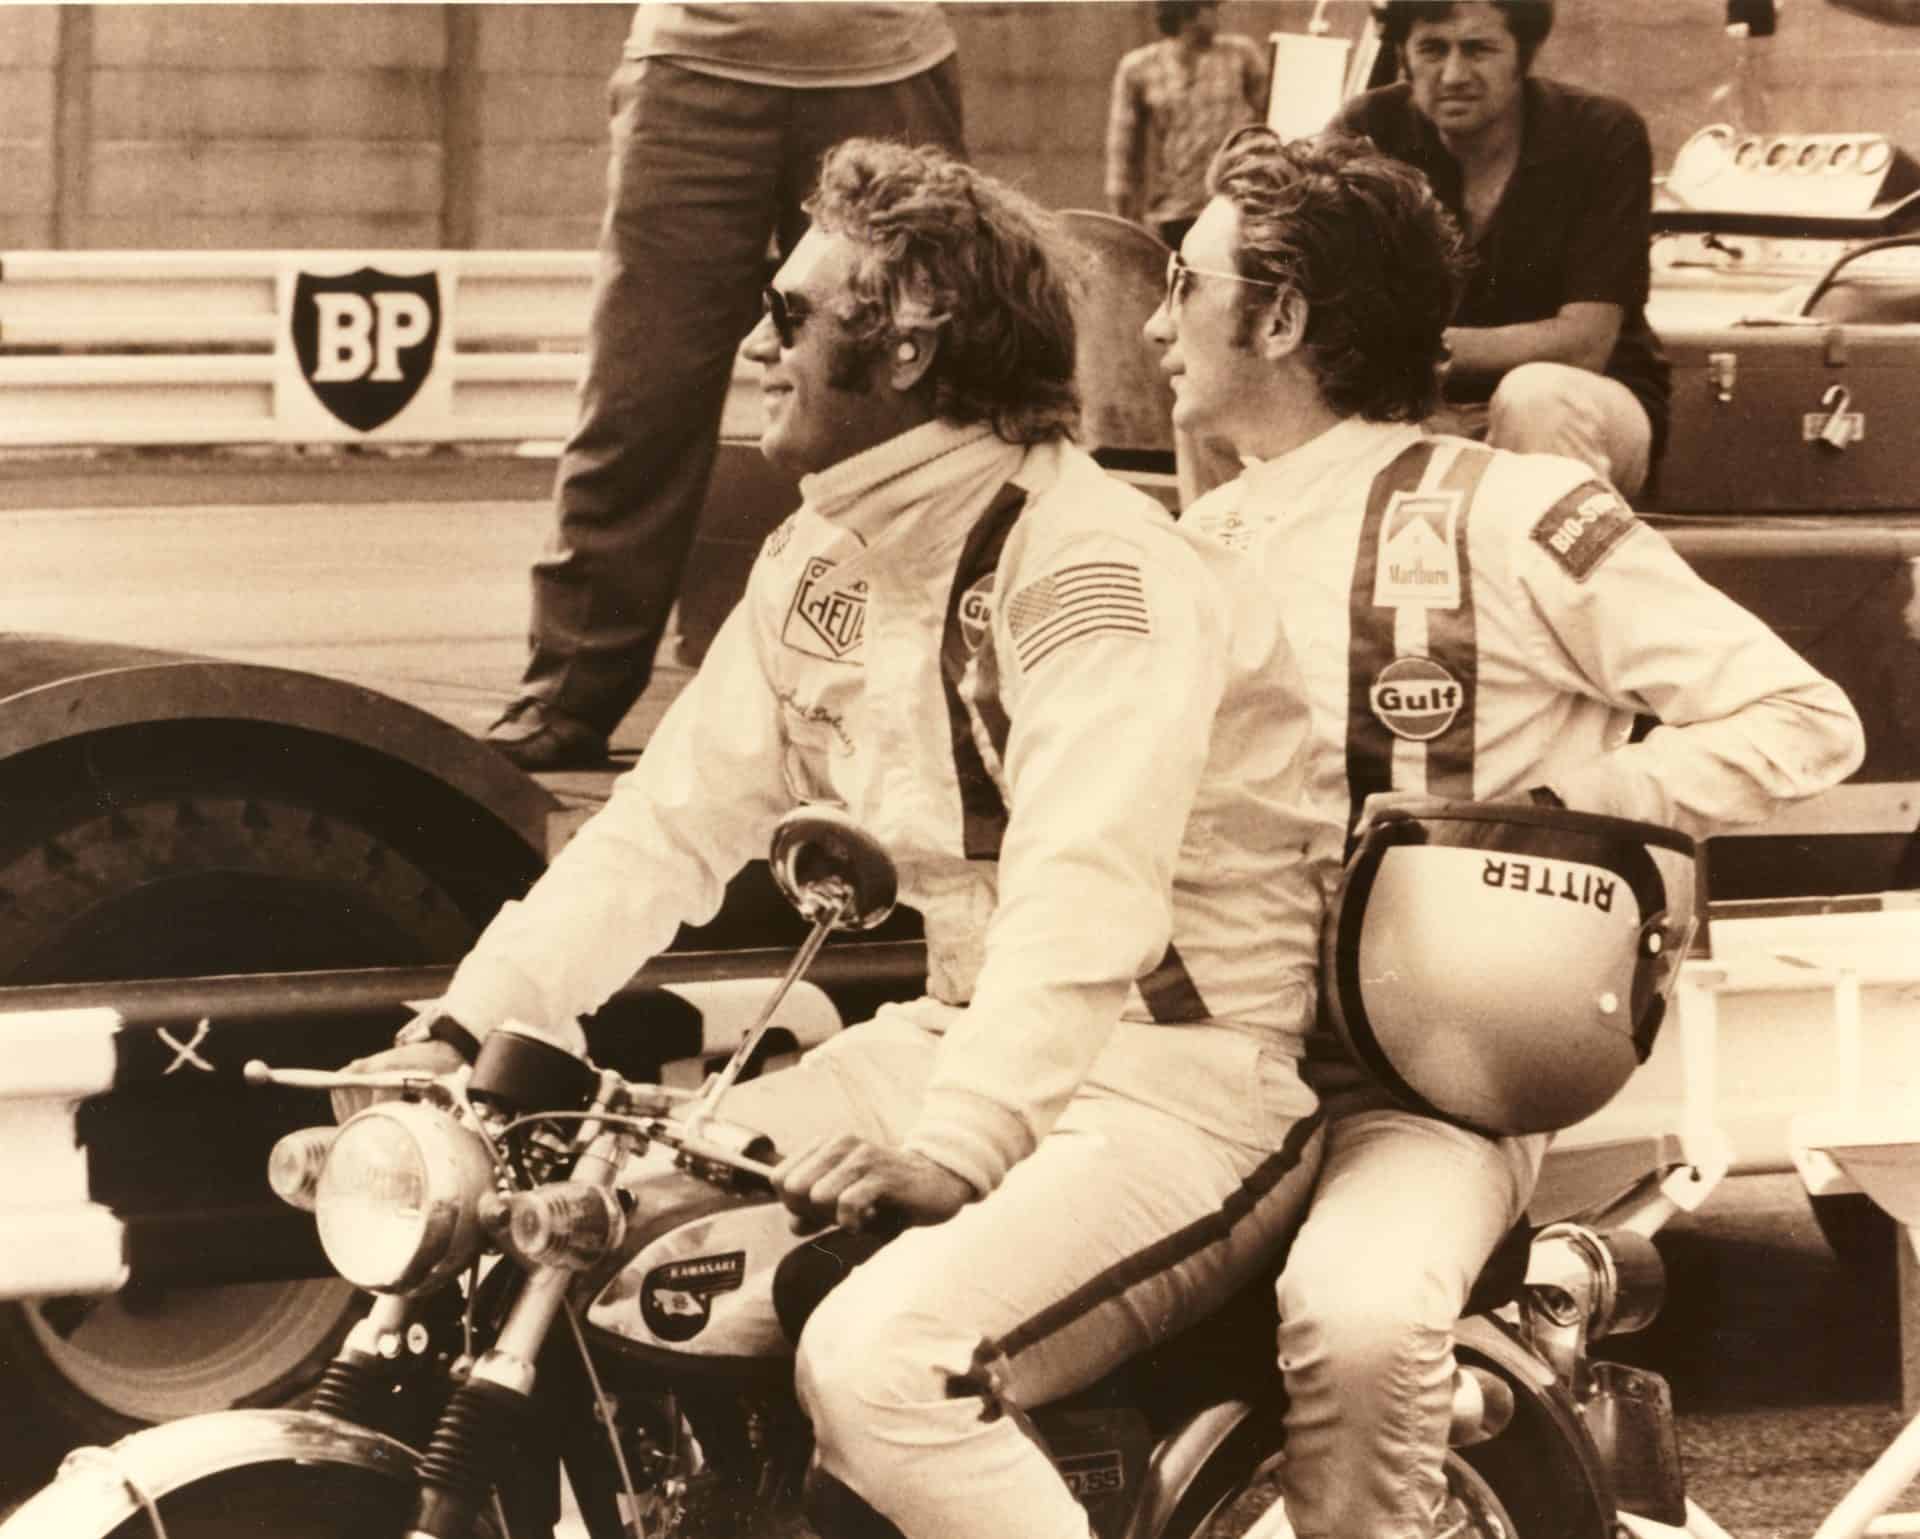 Steve McQueen in LeMans 1970 mit Jo Siffert - das Heuer Logo auf dem Overall